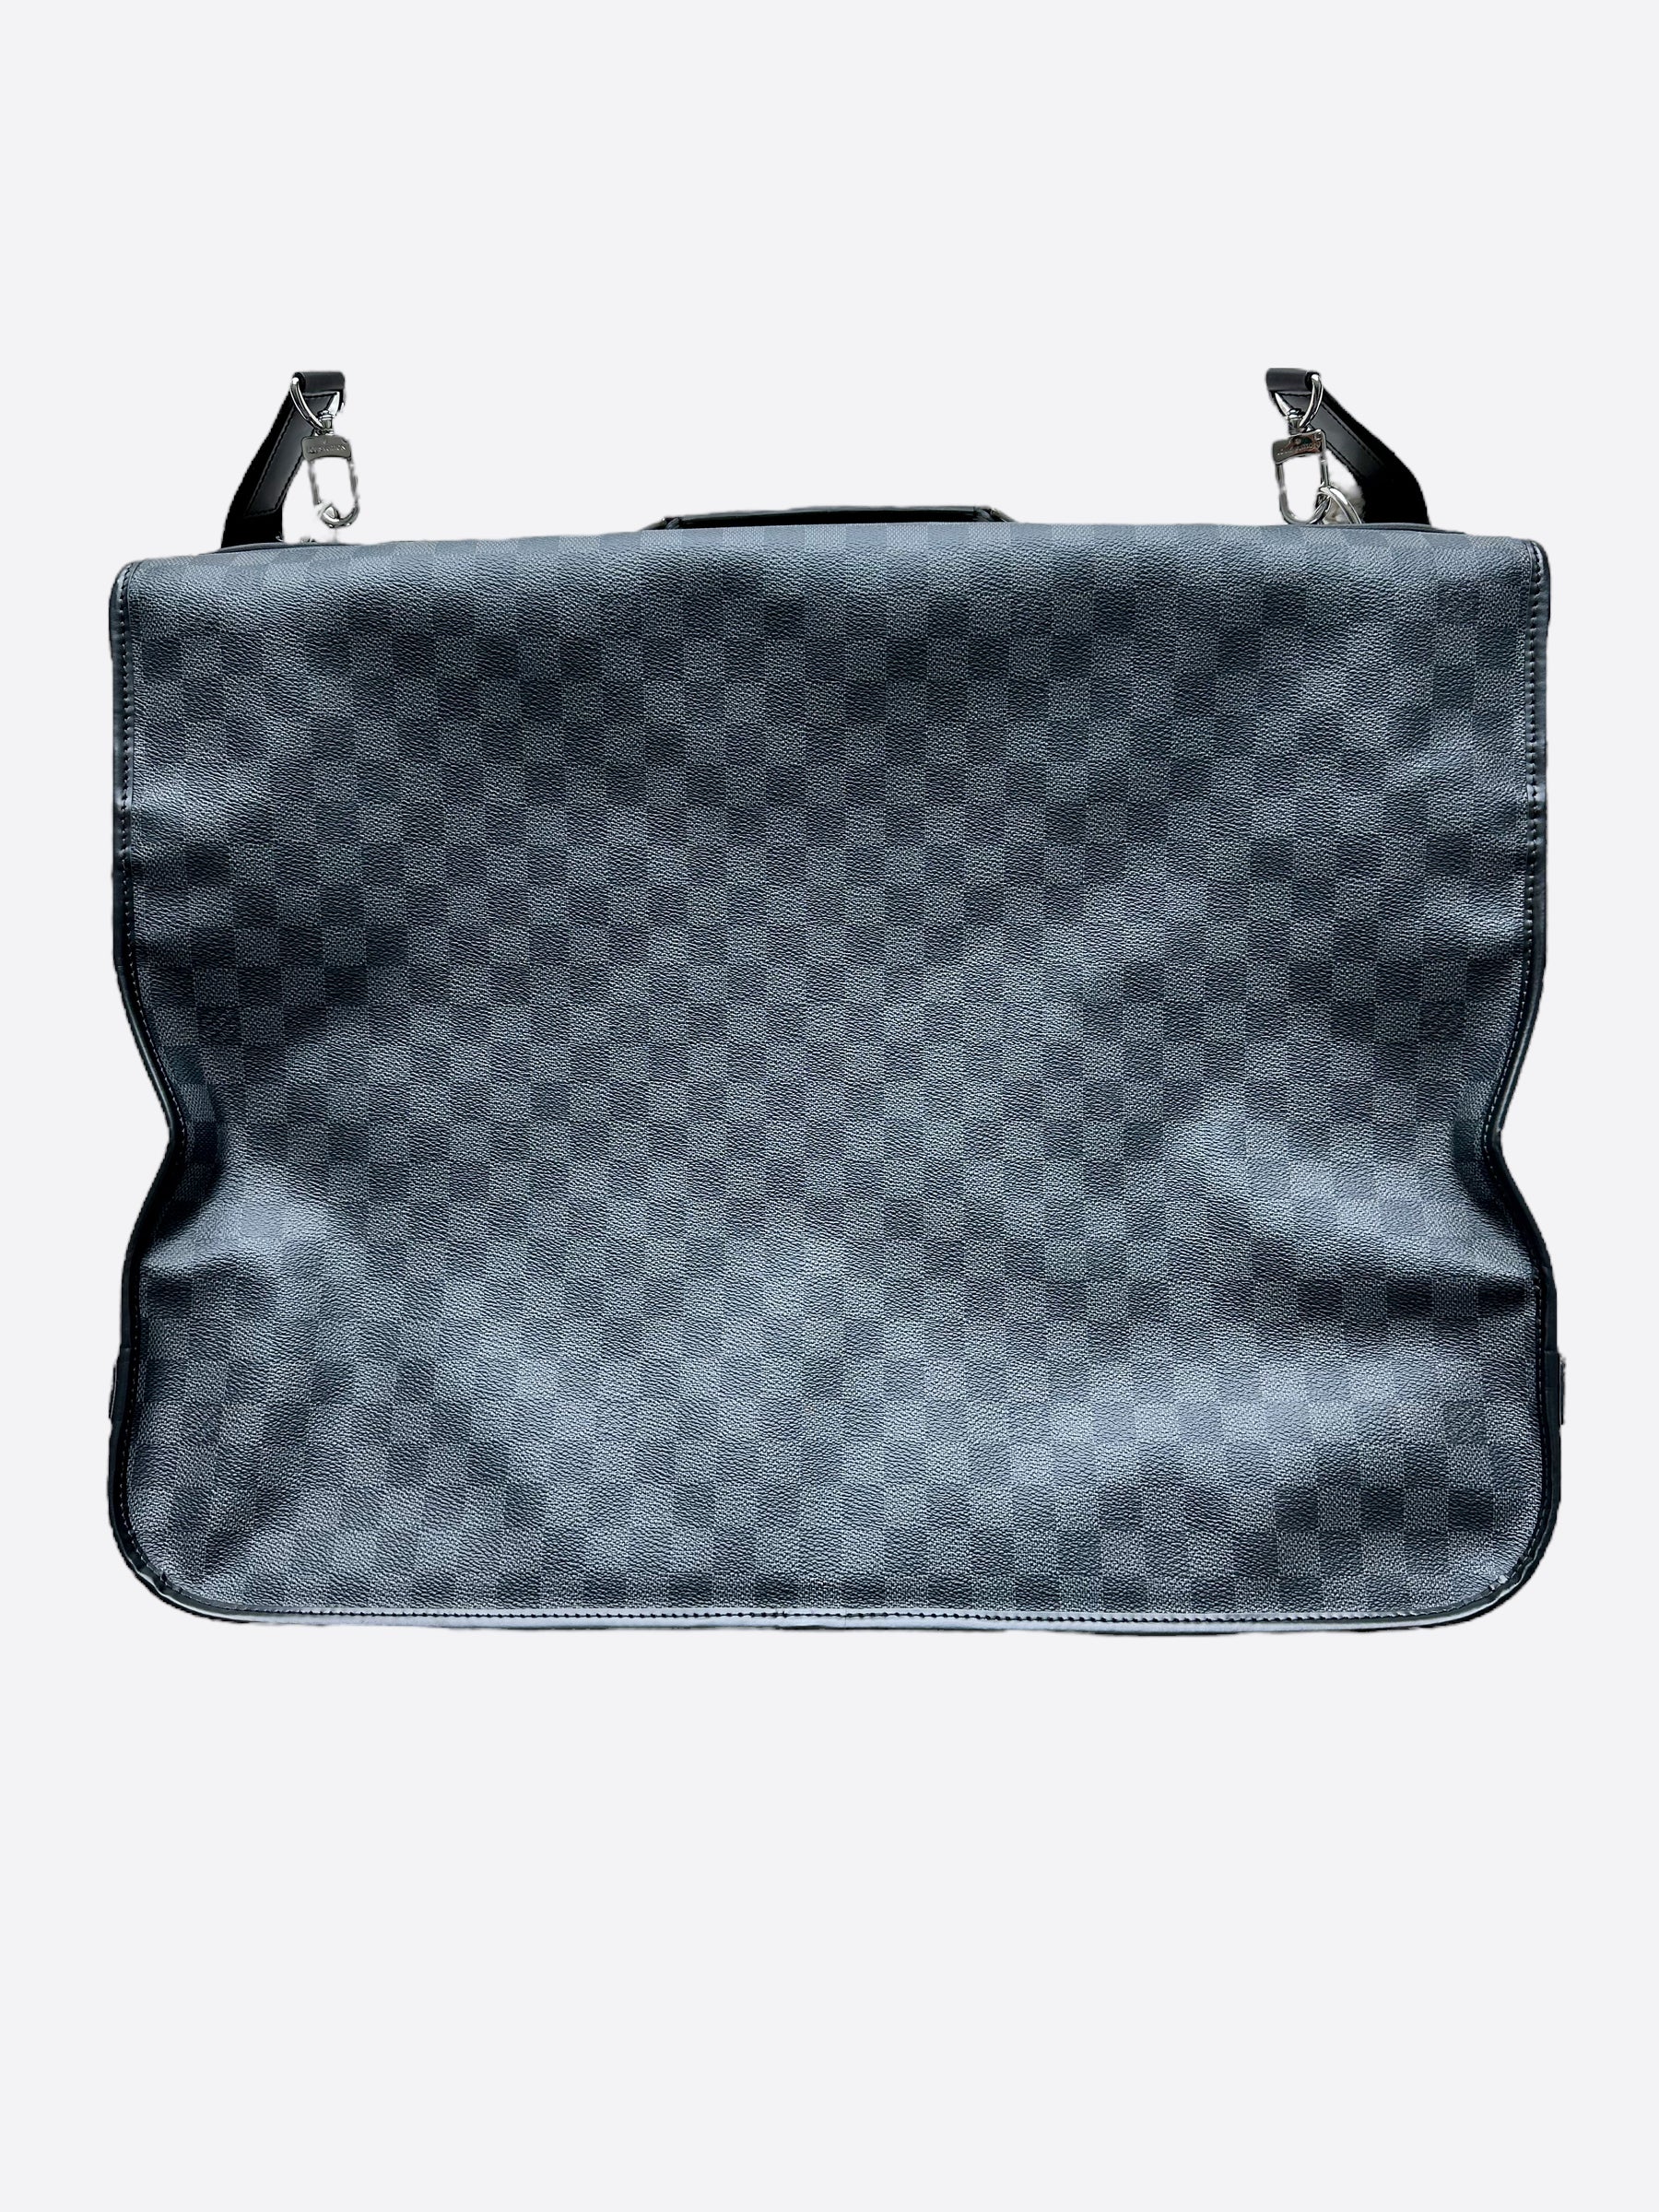 DG06-LV Lingerie Bag, Linen / Cotton - Lavender